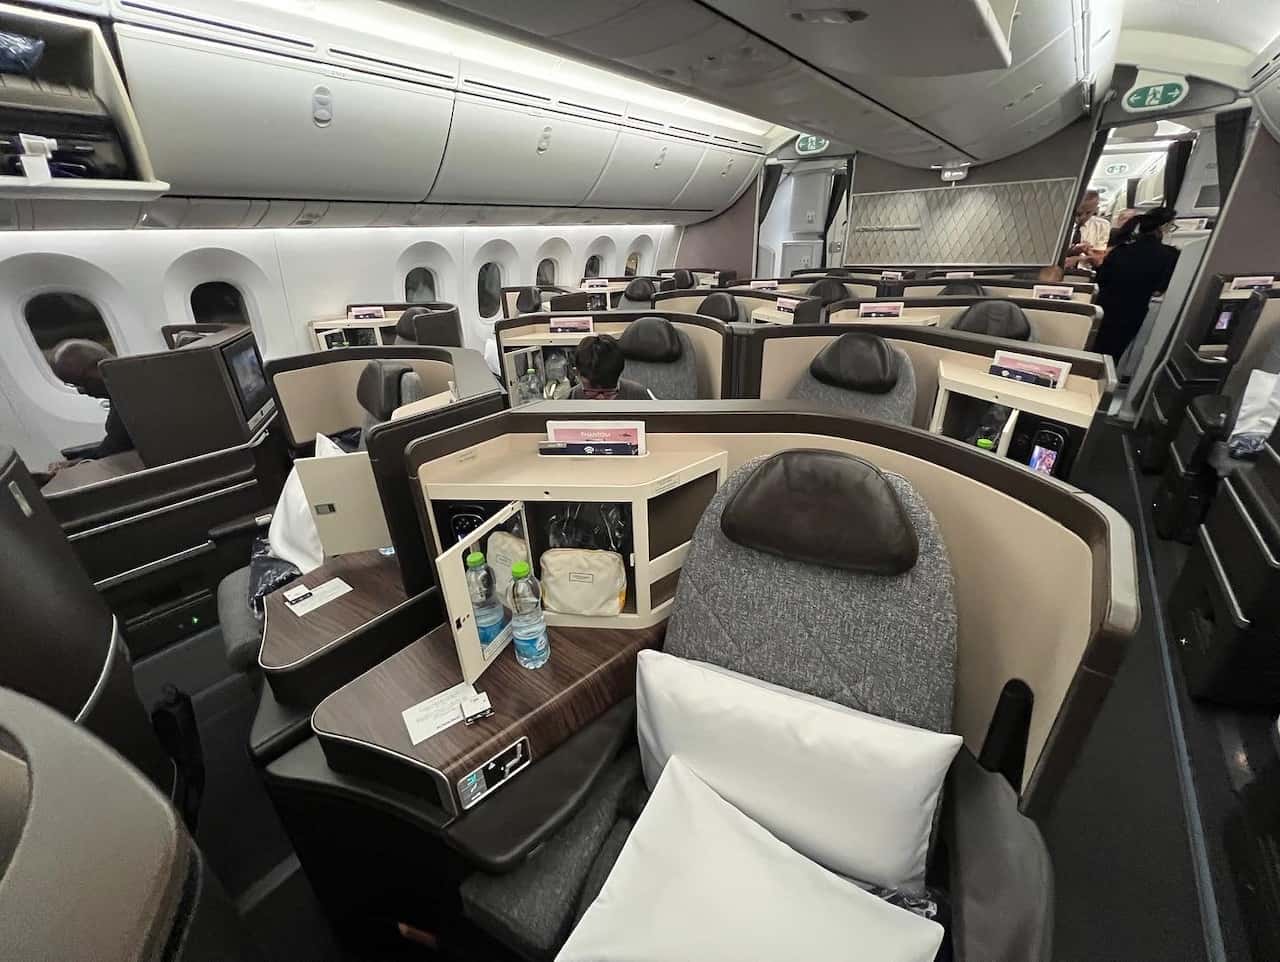 El Air Boeing 787-9 Cabin MIA-TLV-MIA - June 2022 - The Airchive 2.0